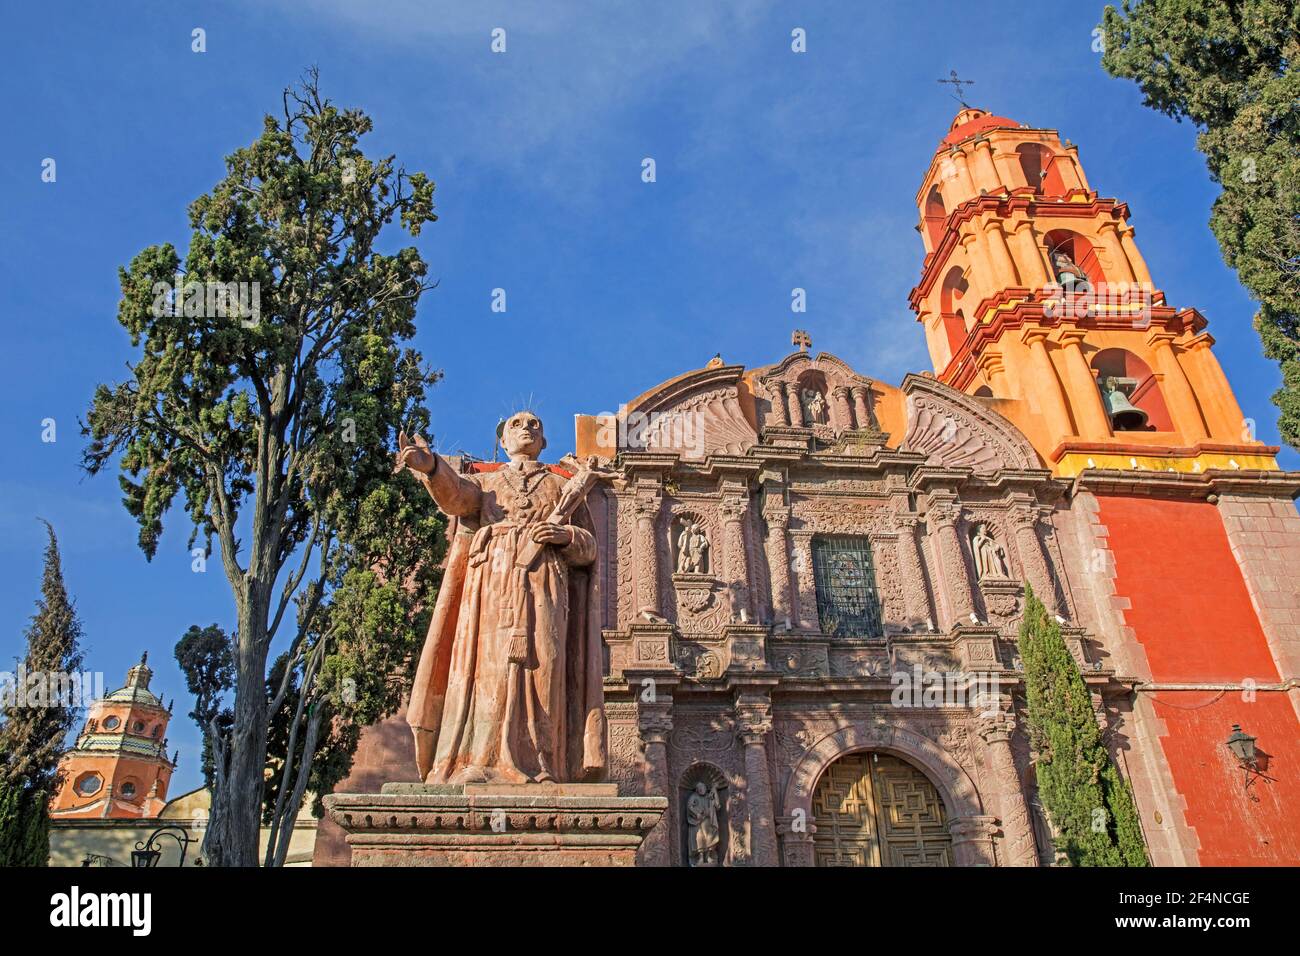 Statue et baroque du XVIIIe siècle Templo del Oratorio de San Felipe Neri dans la ville de San Miguel de Allende, Guanajuato, Mexique Banque D'Images